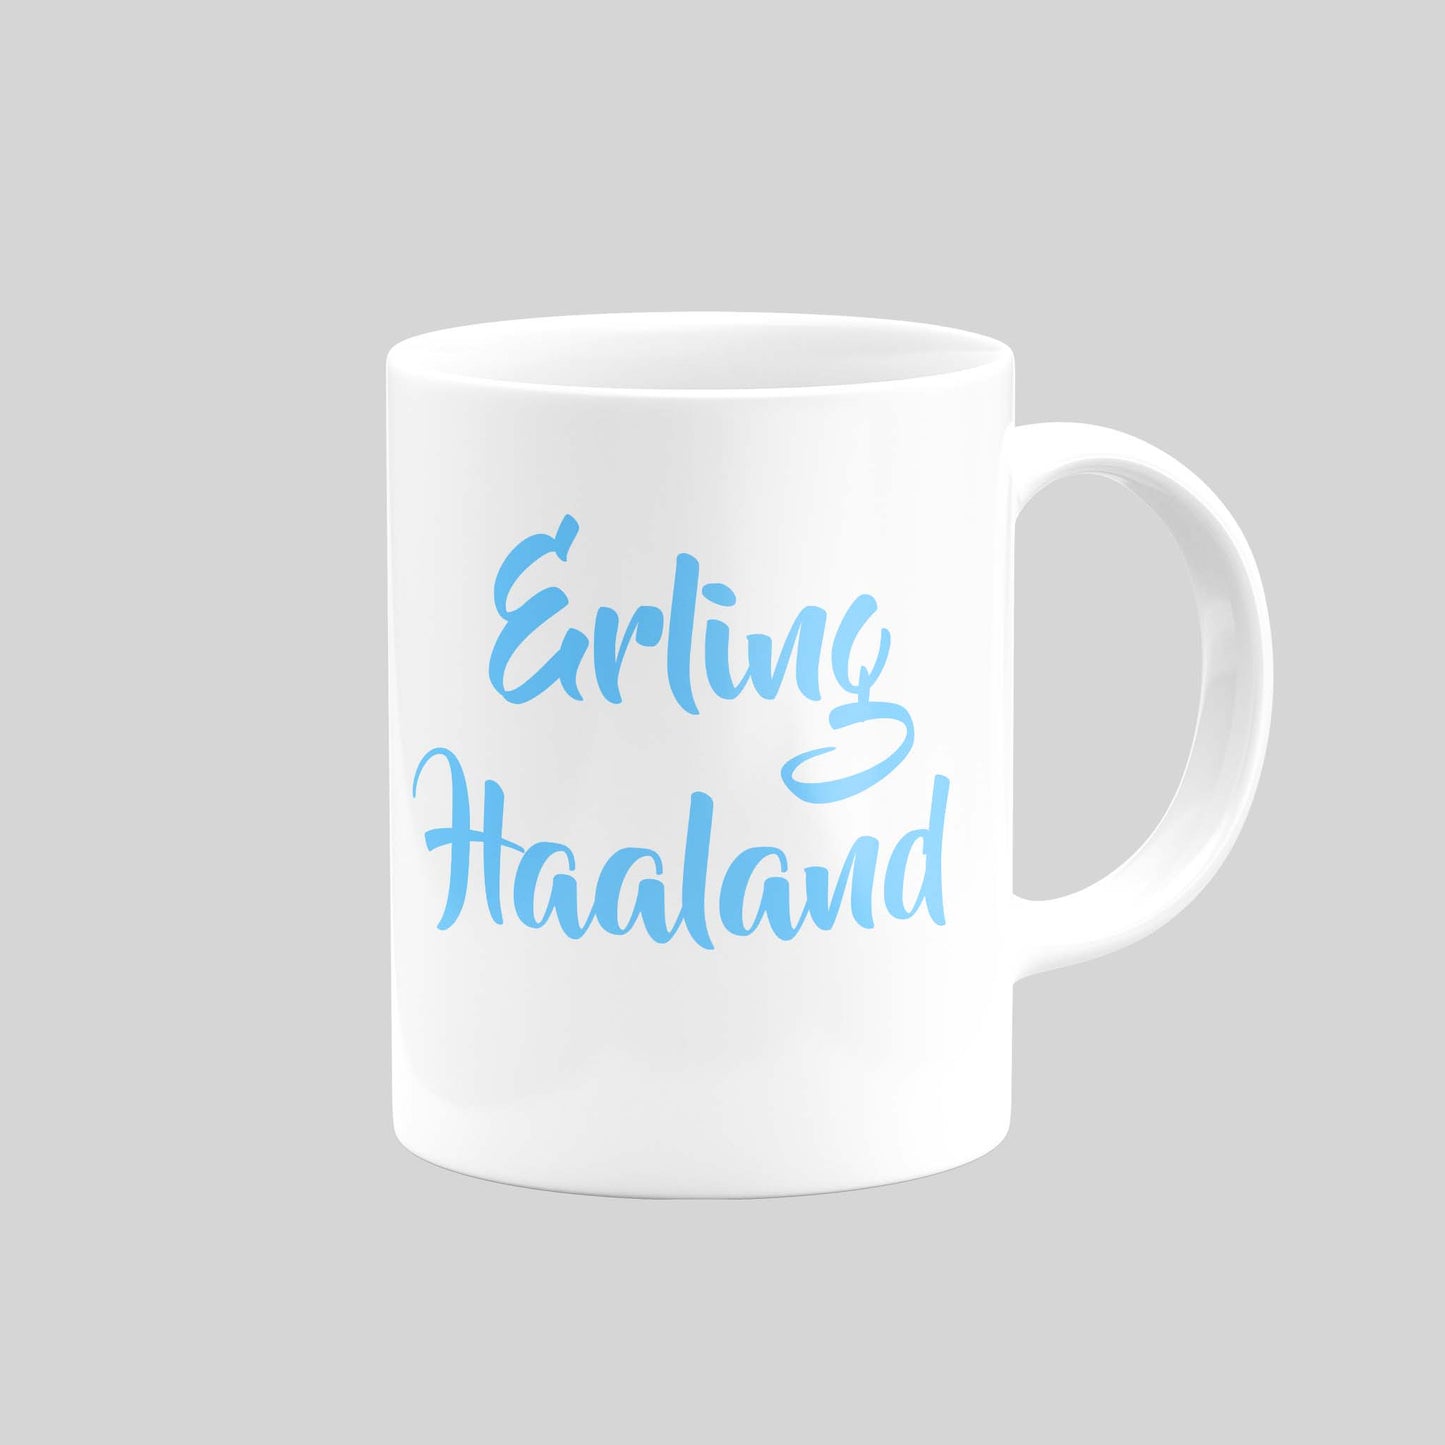 Erling Haaland Mug